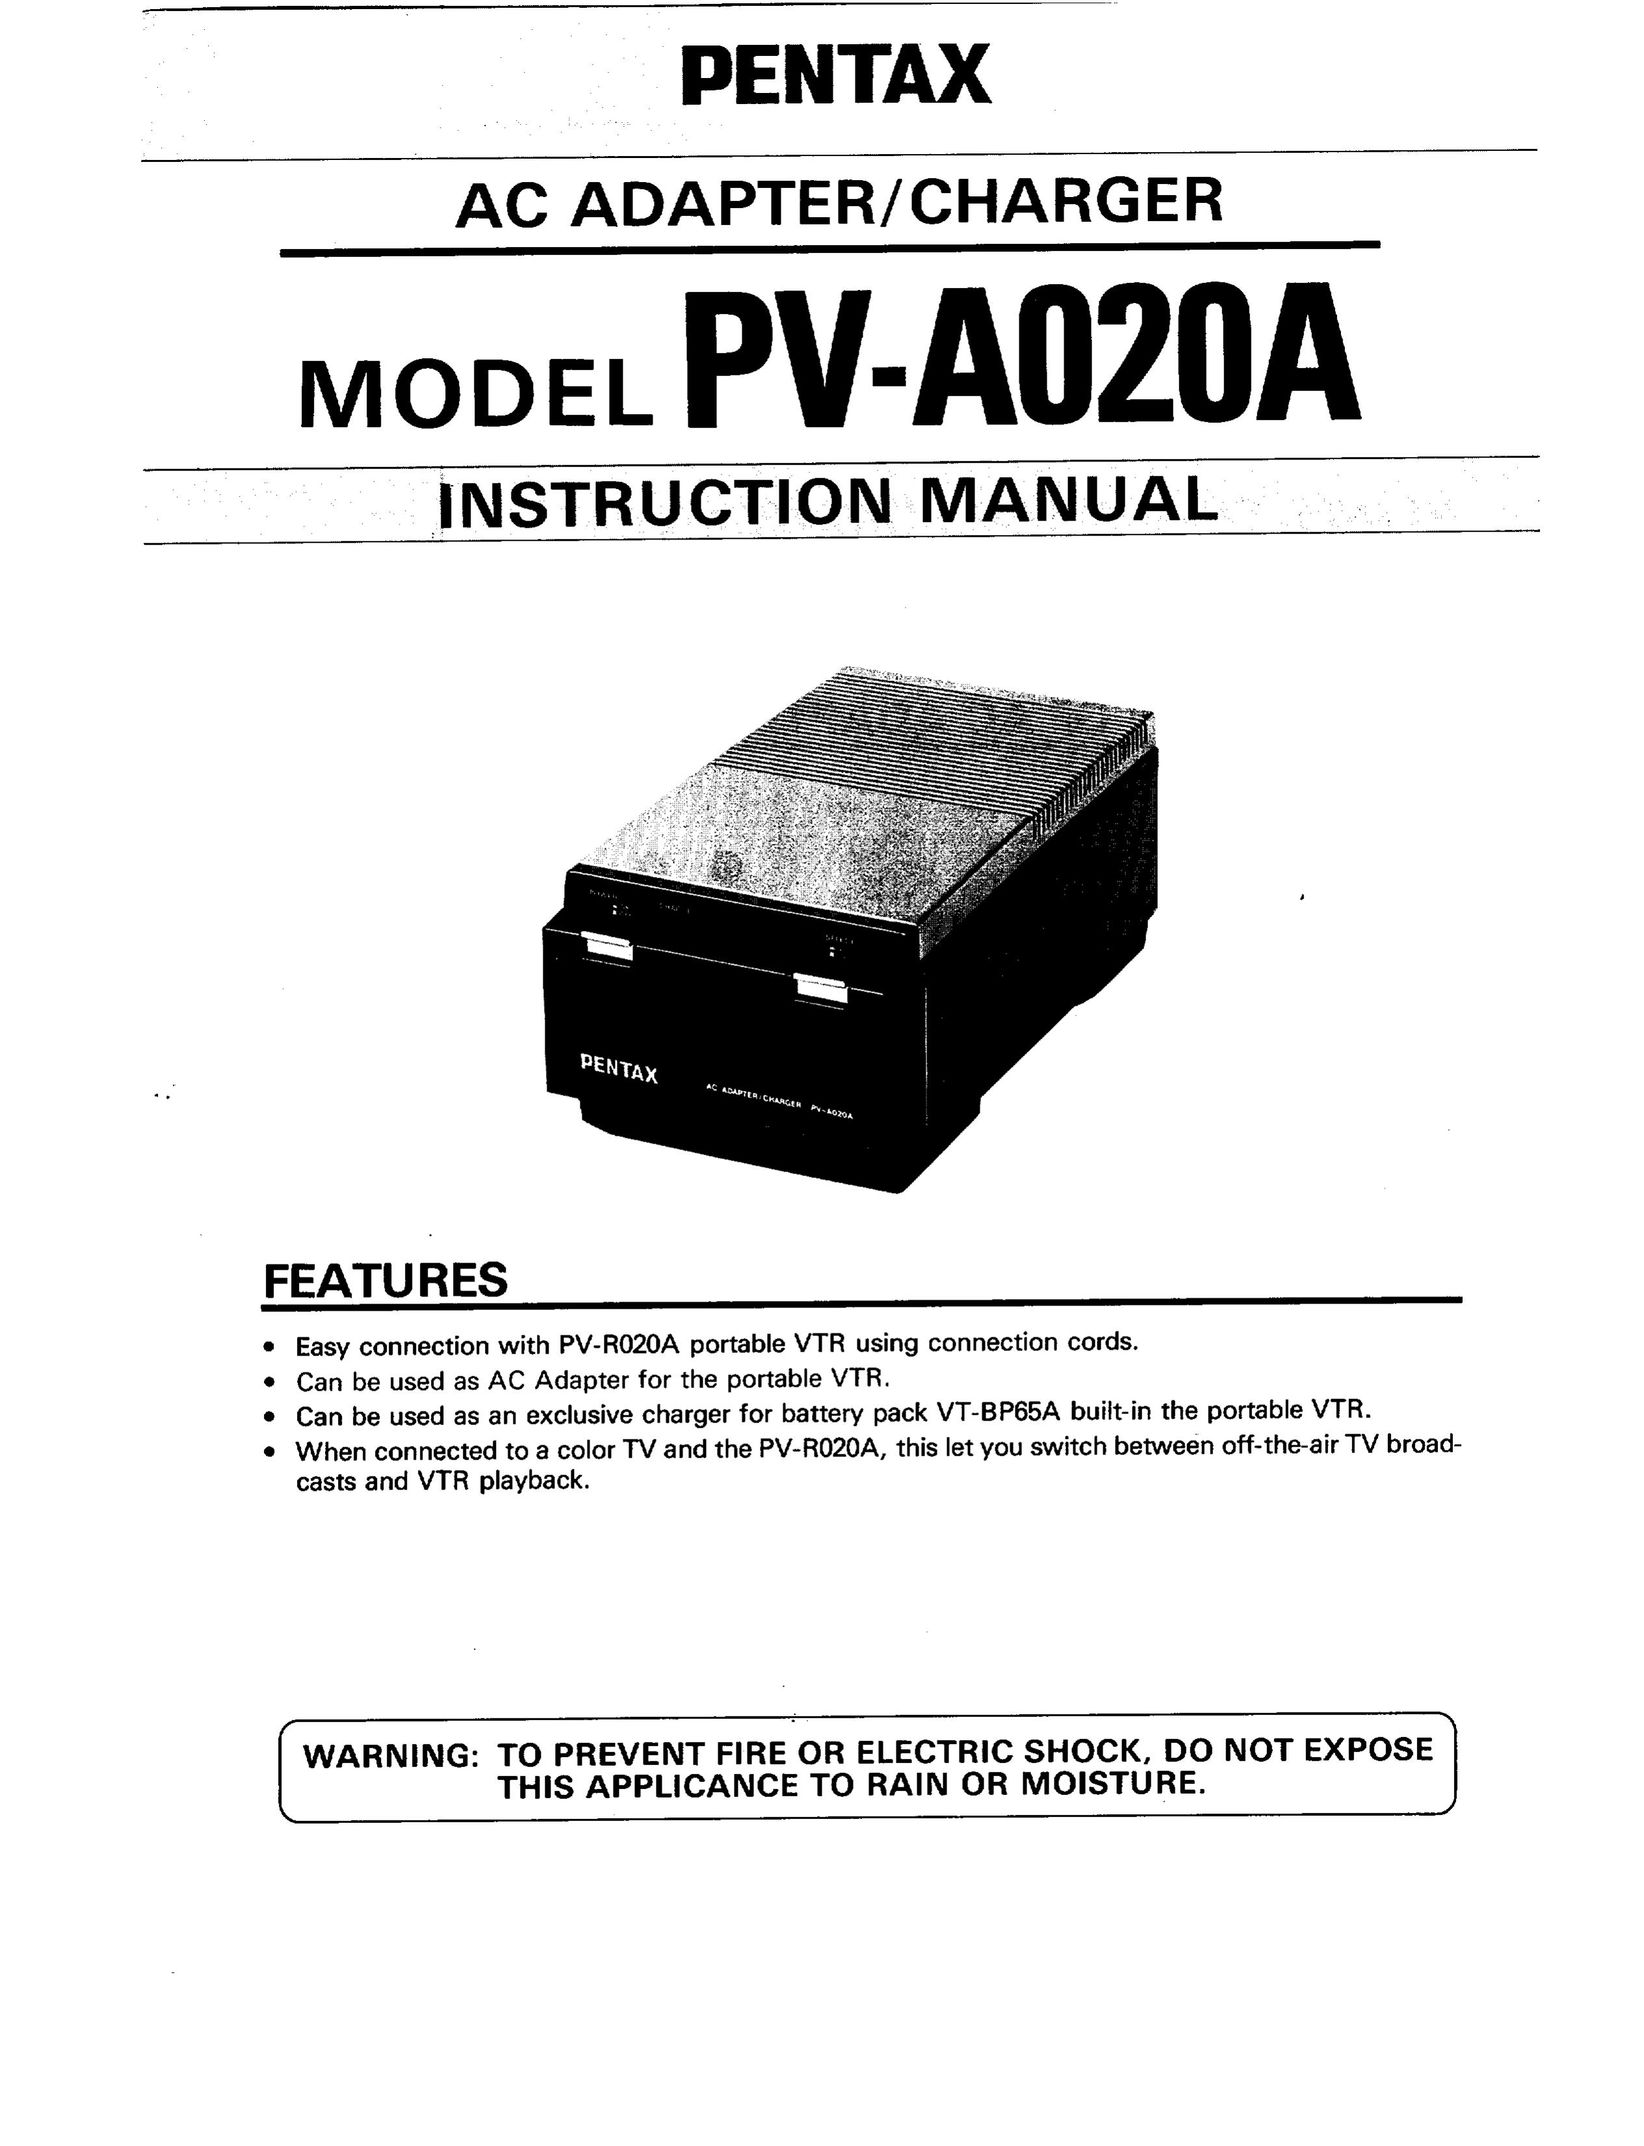 Pentax PV-A020A TV Video Accessories User Manual